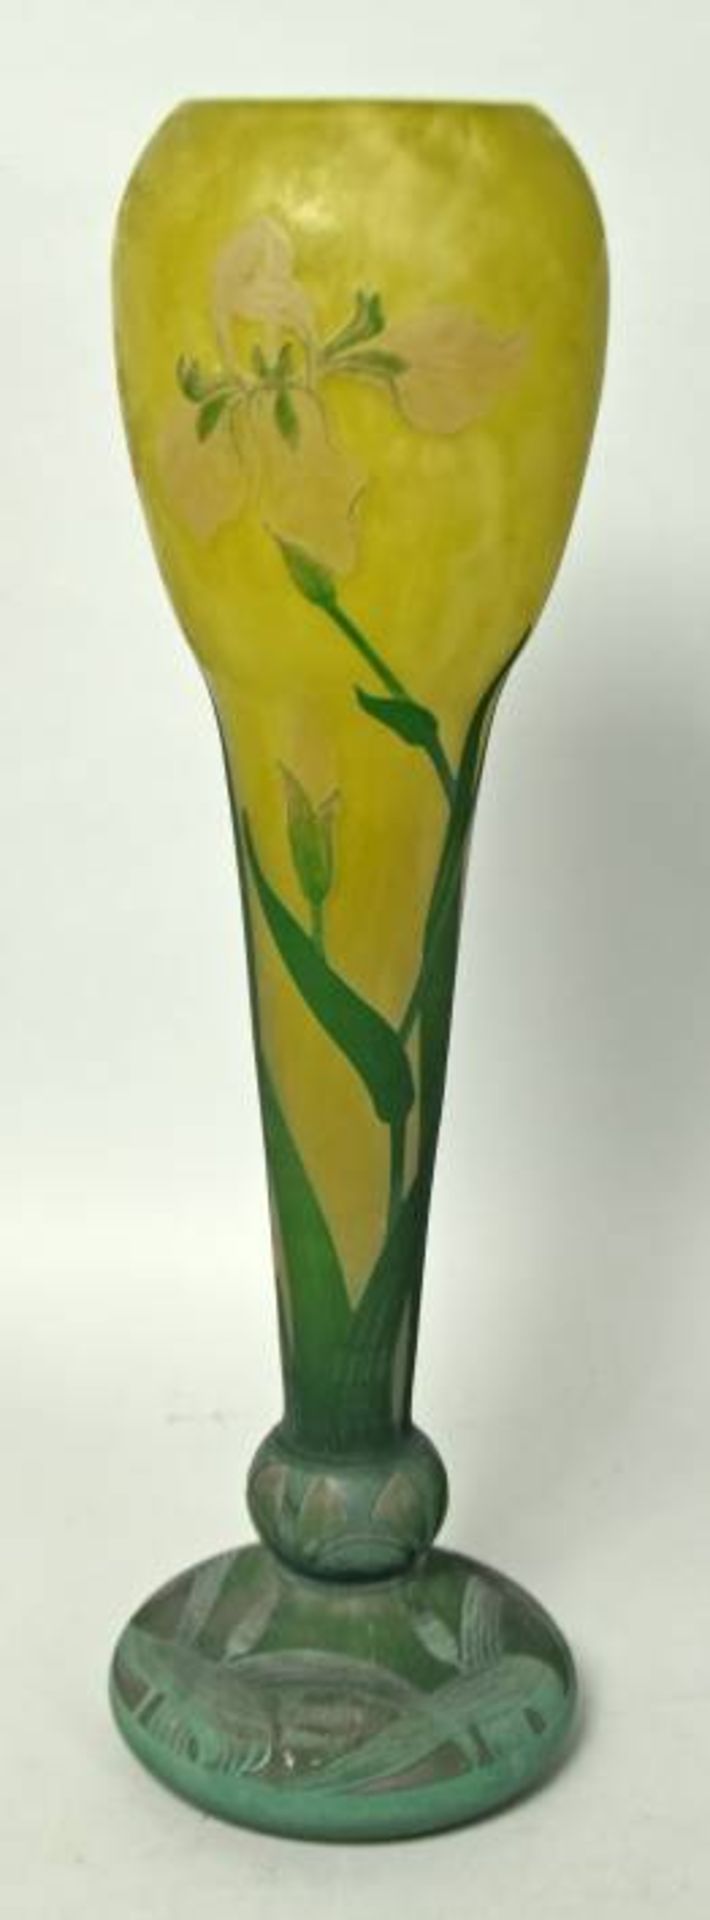 JUGENDSTILVASE DAUM hohe schmale Tulpenform mit abgesetztem Rand, umlaufender Schwertliliendekor auf - Image 3 of 7